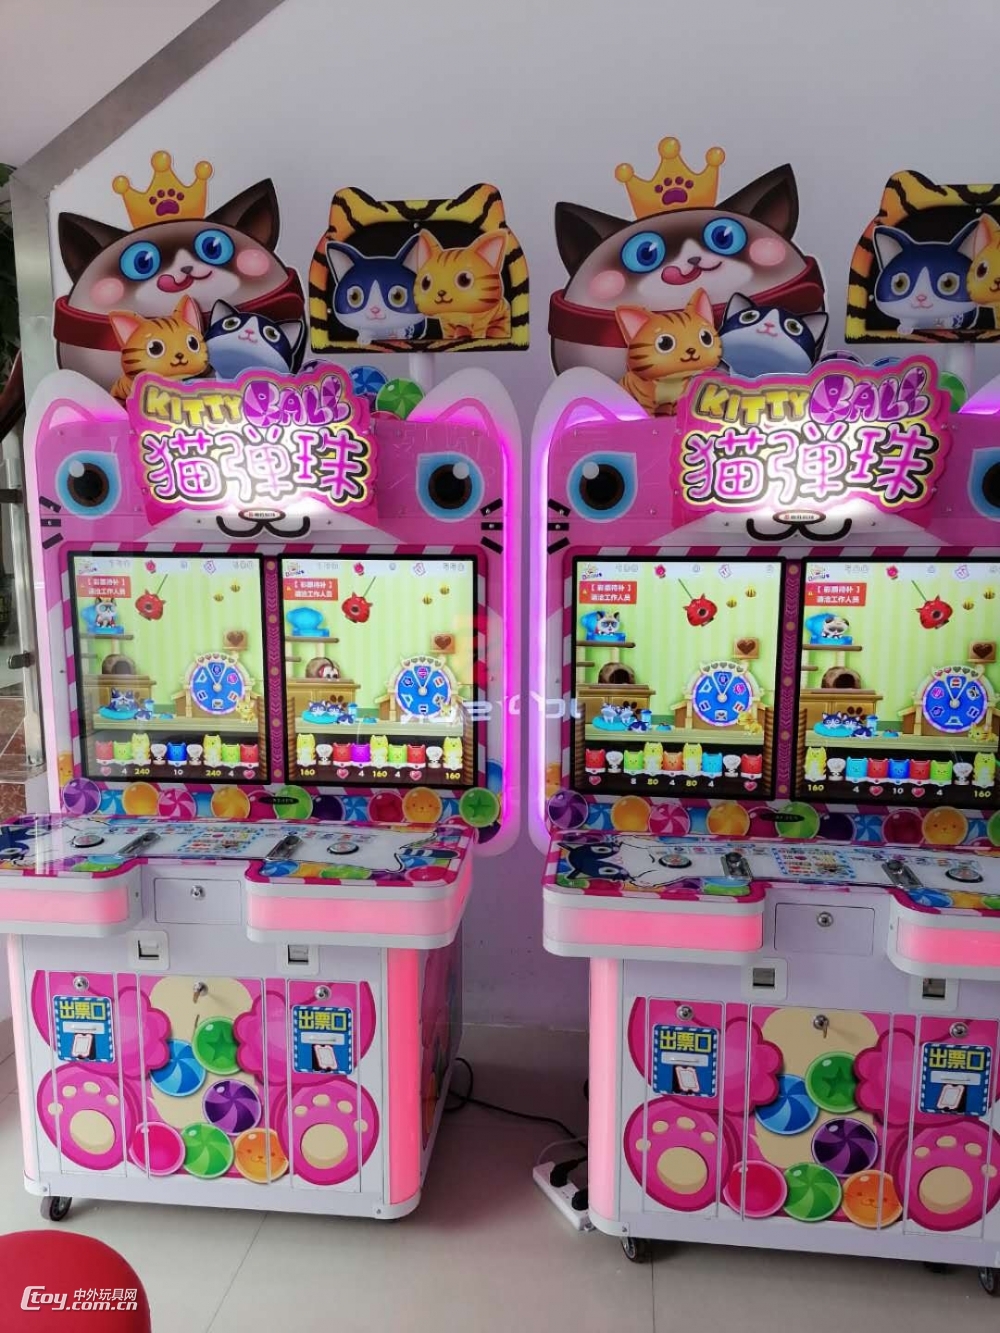 大型游戏厂家猫弹珠彩票游戏机各大连锁店猫弹珠亲子互动游戏机